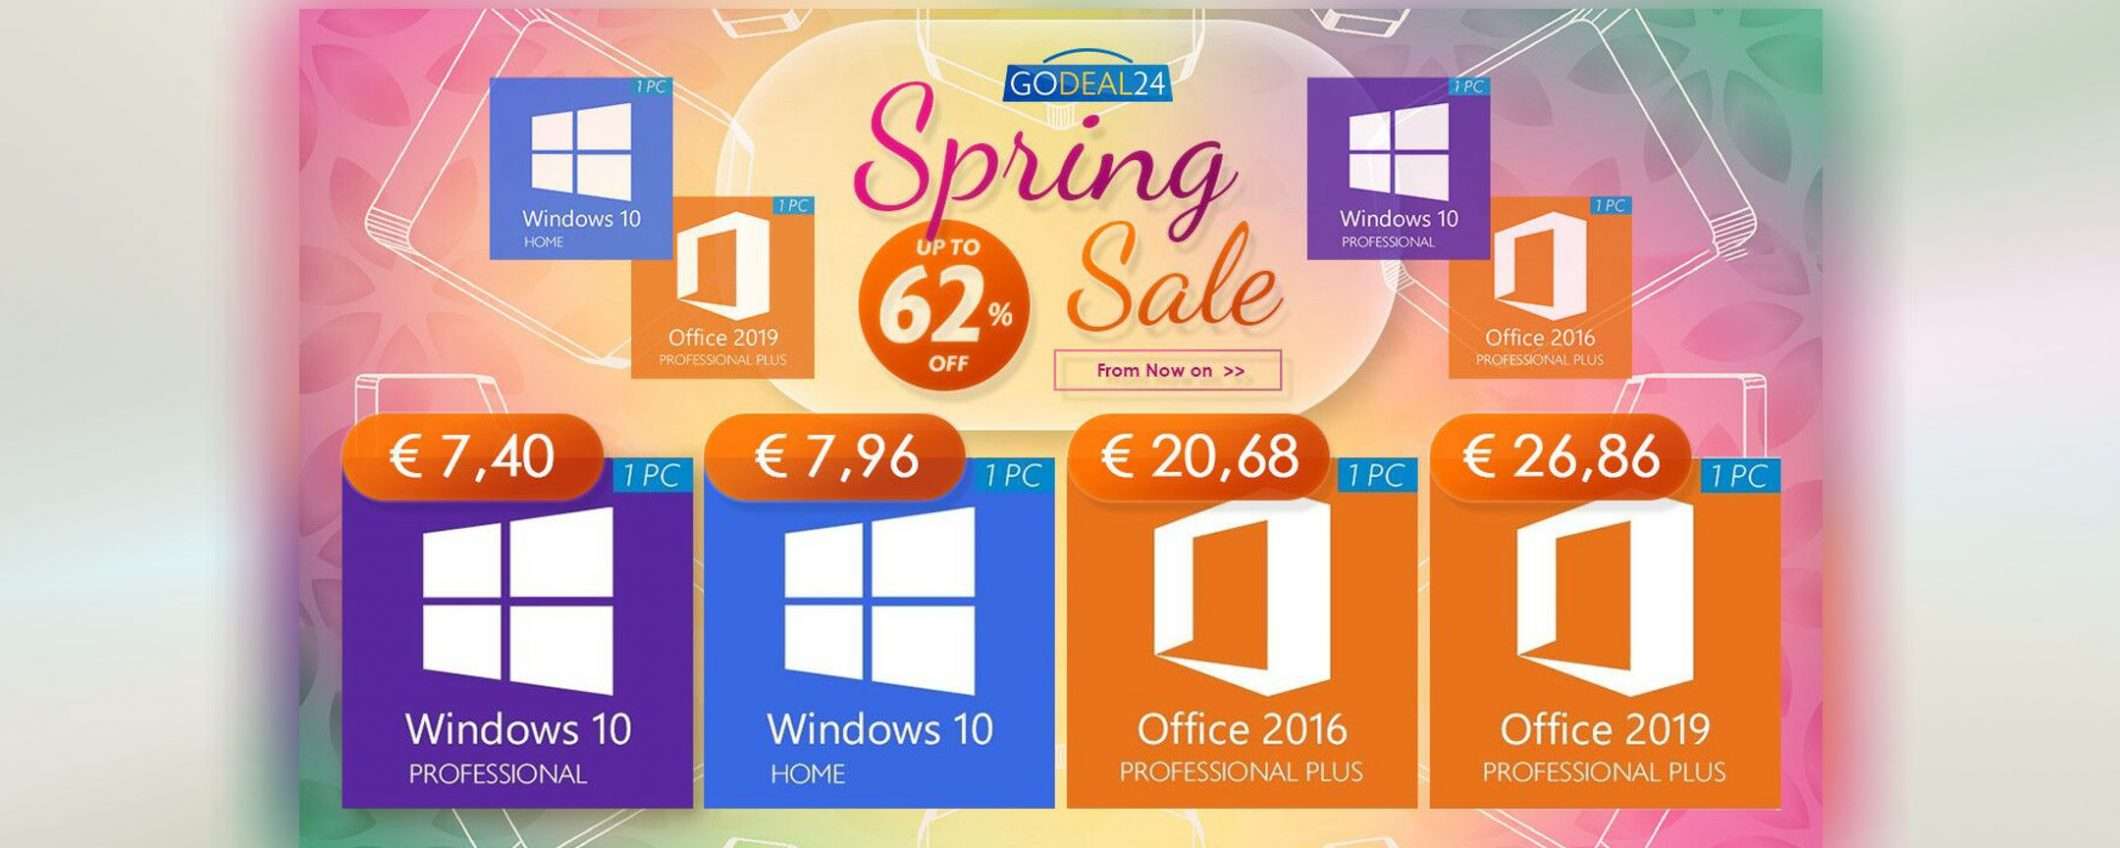 15€ Office, 7€ Windows 10: sconti di primavera su GoDeal24